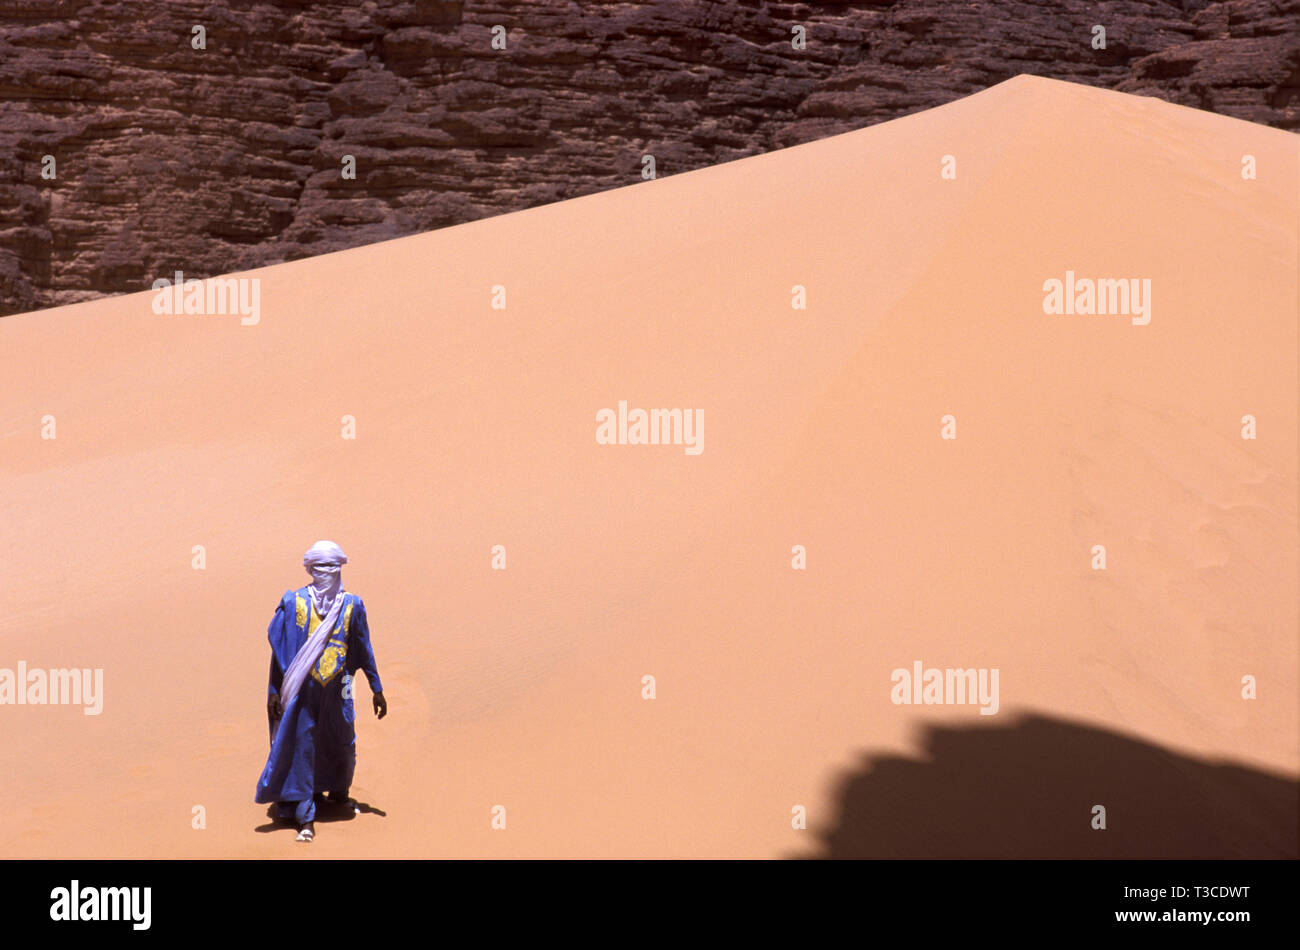 Homme touareg dans un costume traditionnel, marcher sur une dune, l'Algérie Banque D'Images